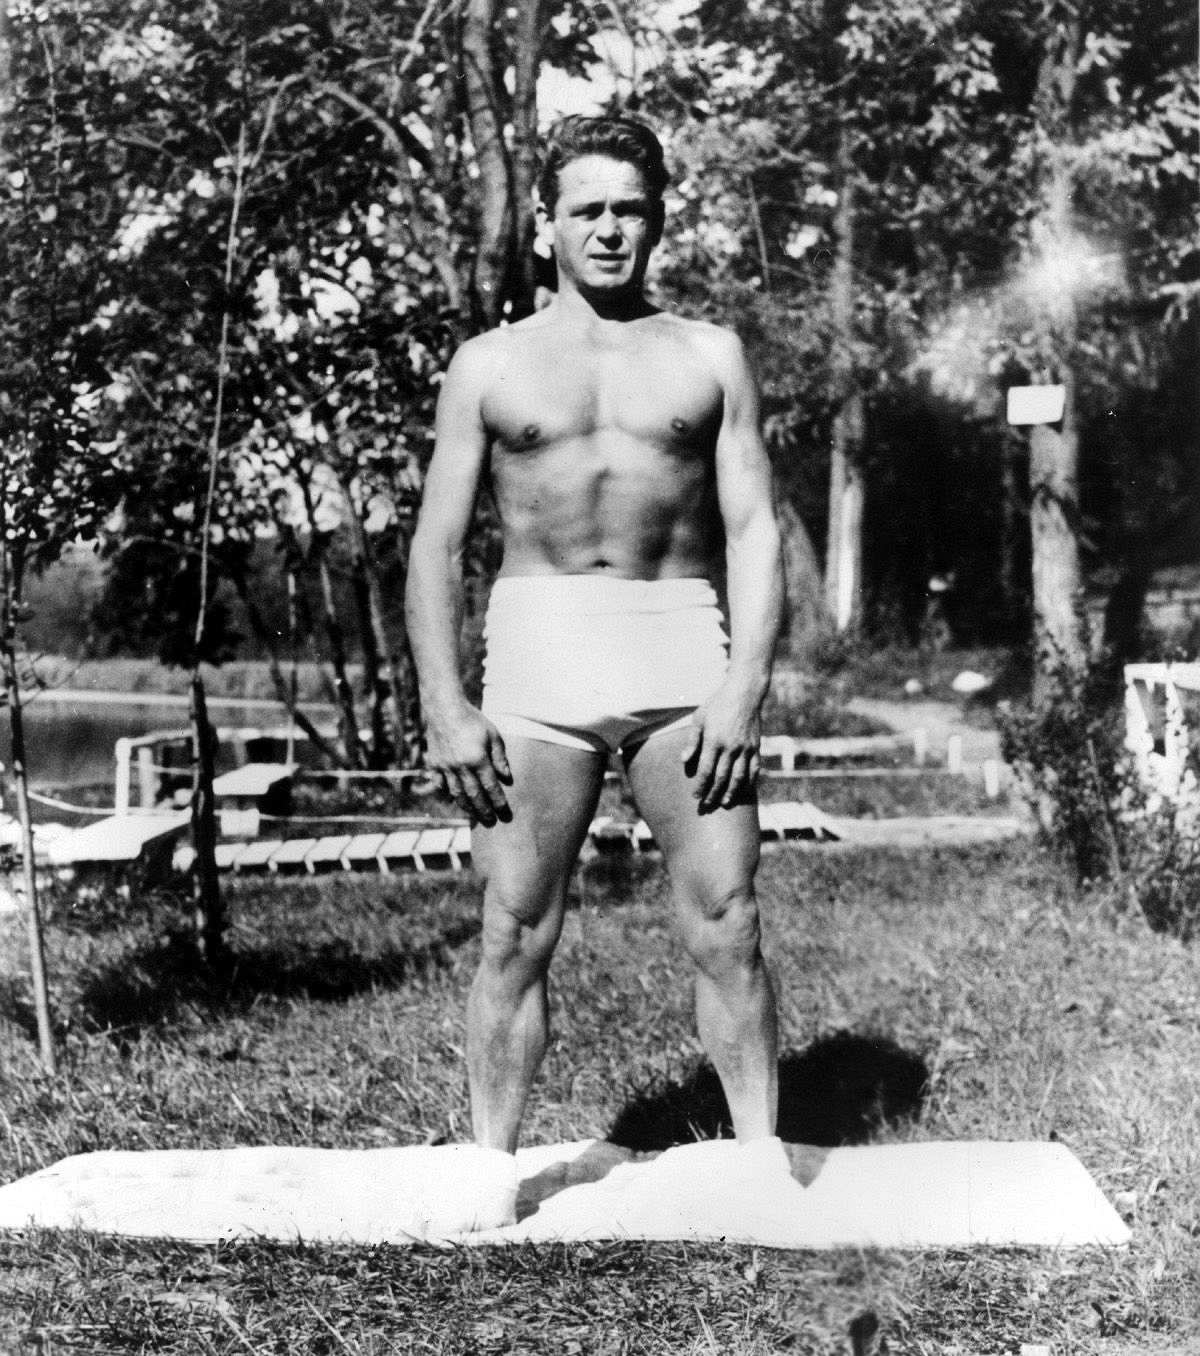 Schwarz-weiße Fotografie von Joseph Pilates. Er steht draußen im Garten breitbeinig auf einer Turnmappe und trägt nur eine weiße Shorts. Sein Körper ist muskulös und er schaut mit zusammengekneiften Augen in die Kamera.